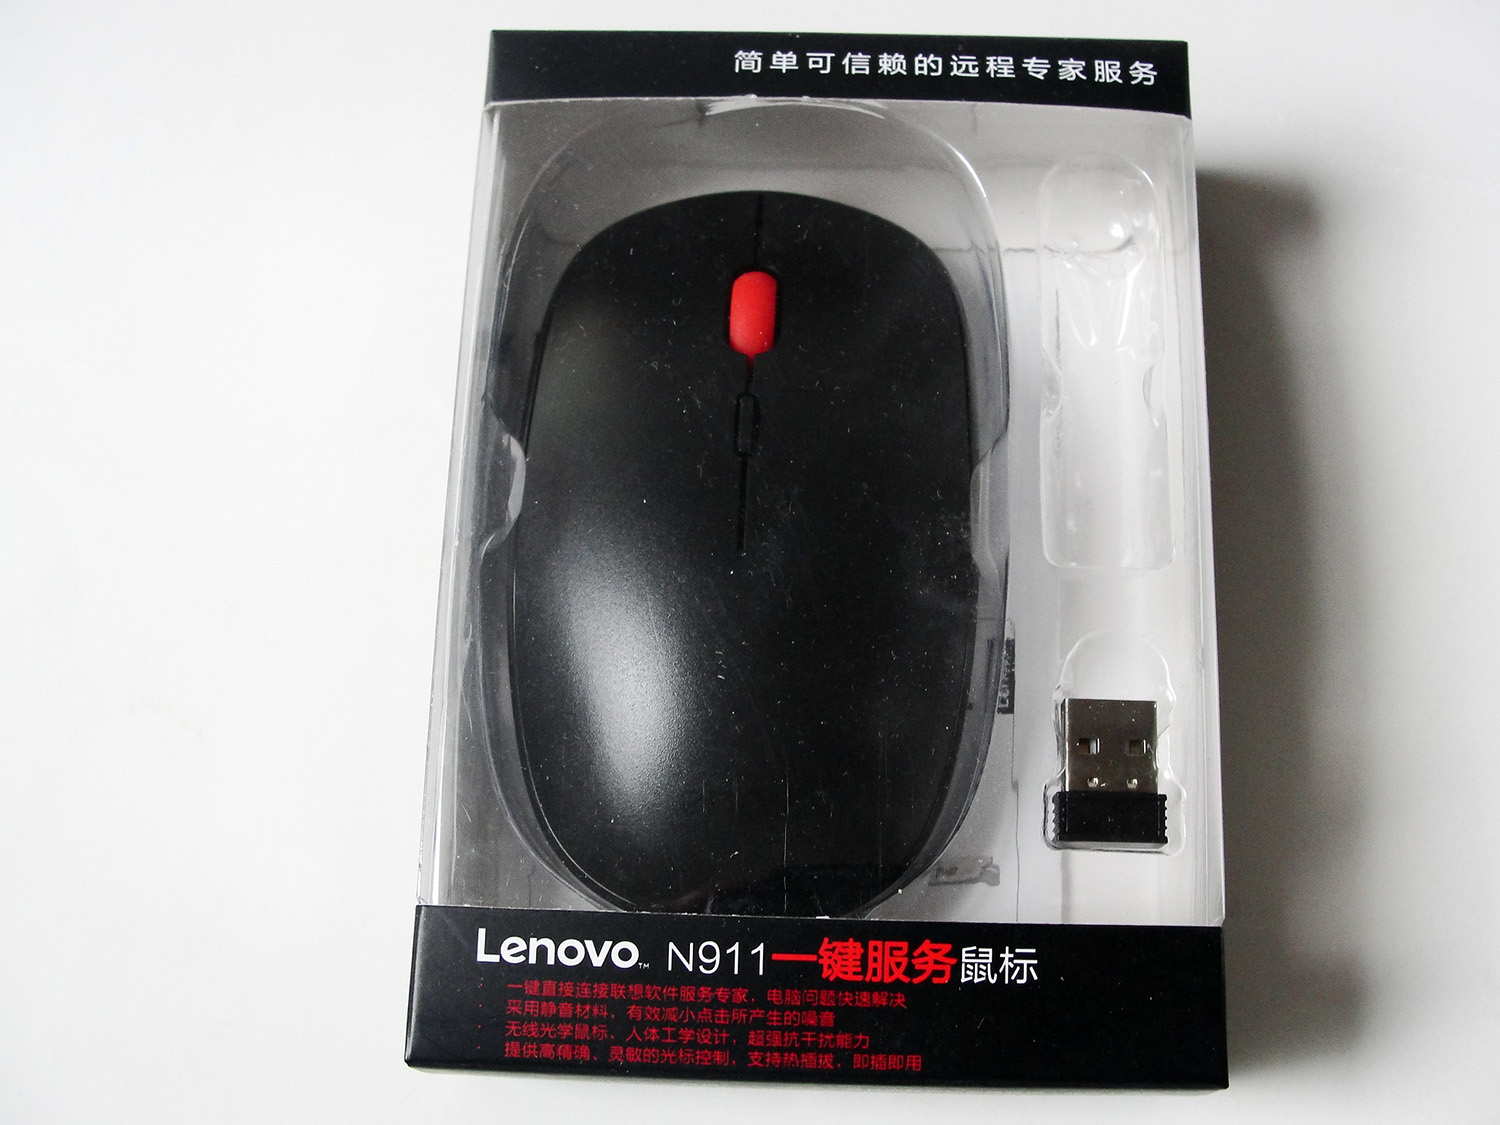 联想N911原装USB无线光学鼠标